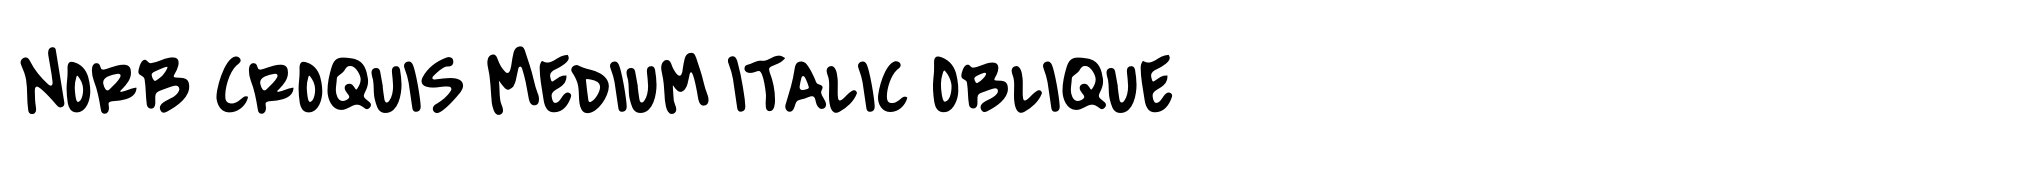 NorB Croquis Medium Italic Oblique image